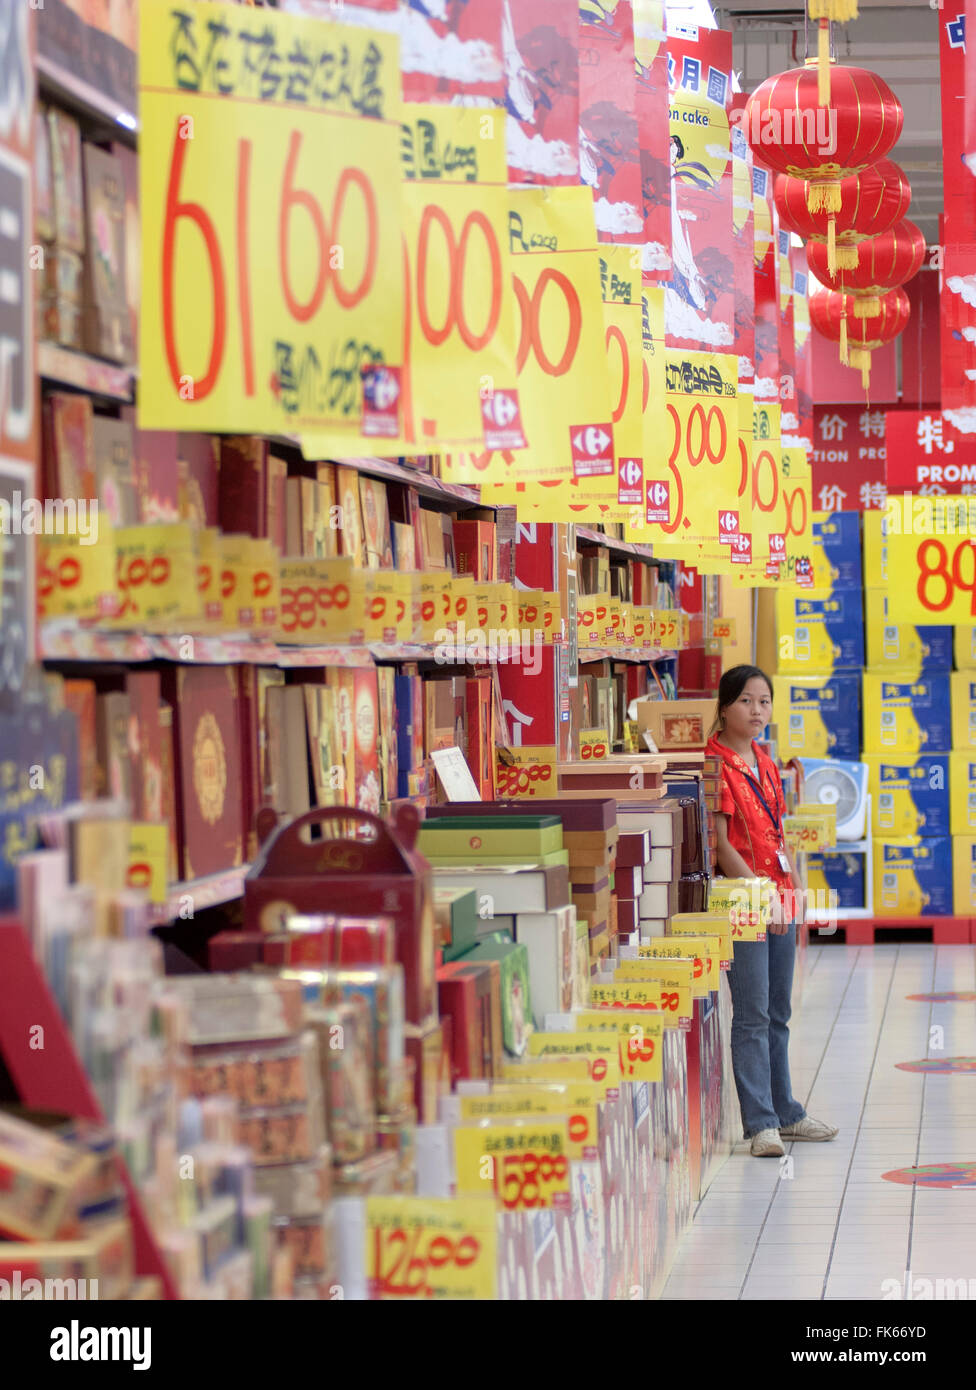 Travailleur de supermarché vendant des promotions, le consumérisme dans la nouvelle Chine, Shanghai, Chine, Asie Banque D'Images